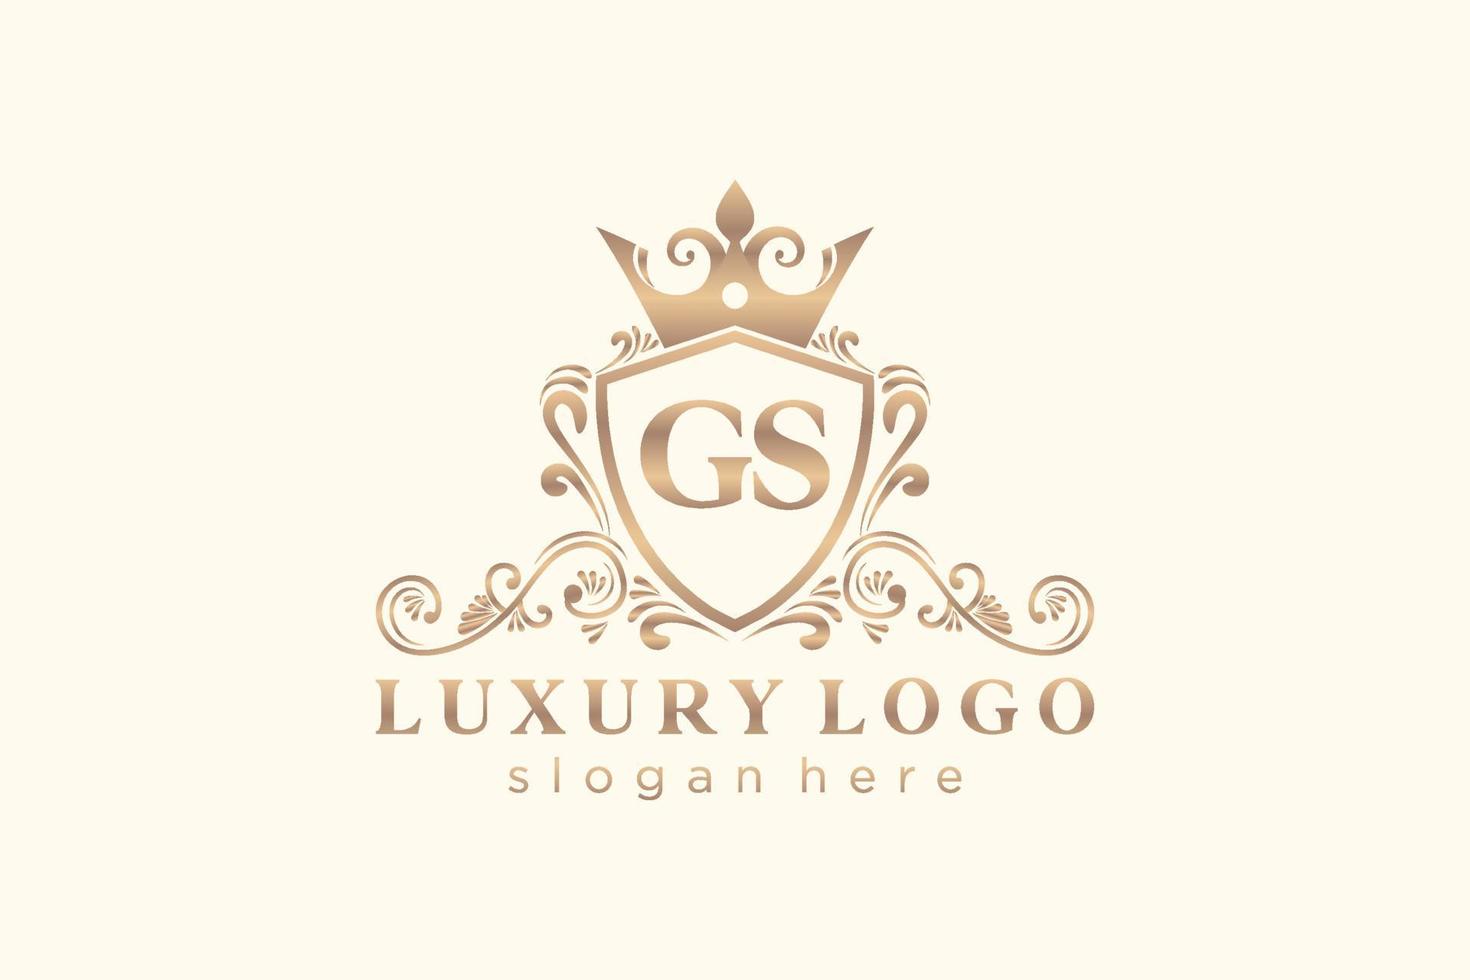 modelo de logotipo de luxo real carta inicial gs em arte vetorial para restaurante, realeza, boutique, café, hotel, heráldica, joias, moda e outras ilustrações vetoriais. vetor